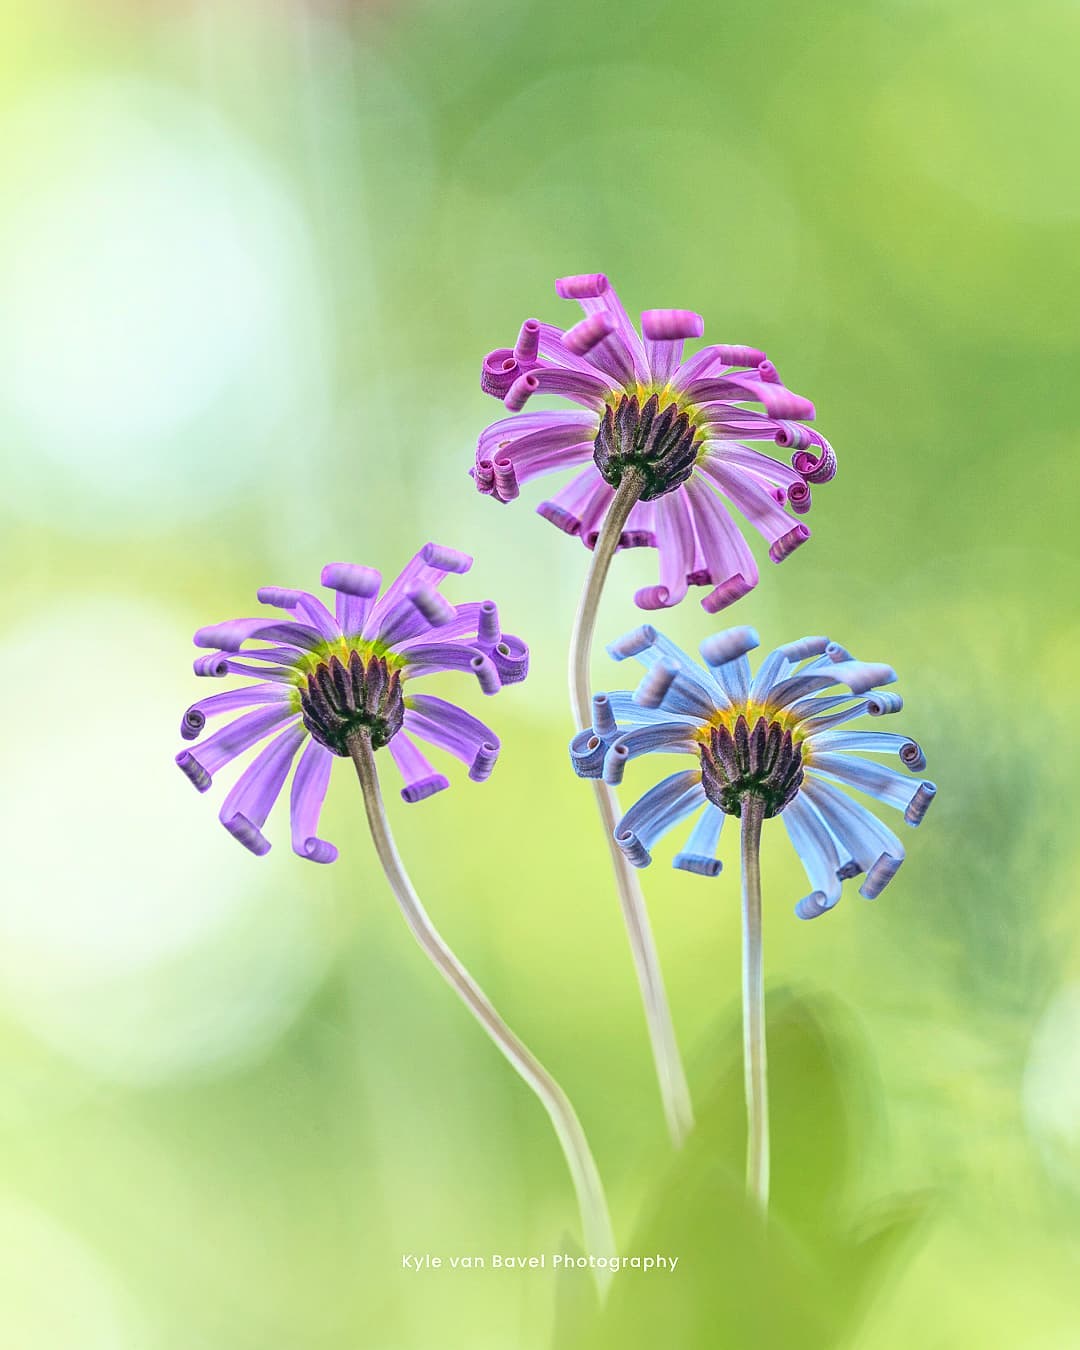 Грибы, цветы и насекомые на макроснимках Кайла ван Бавела